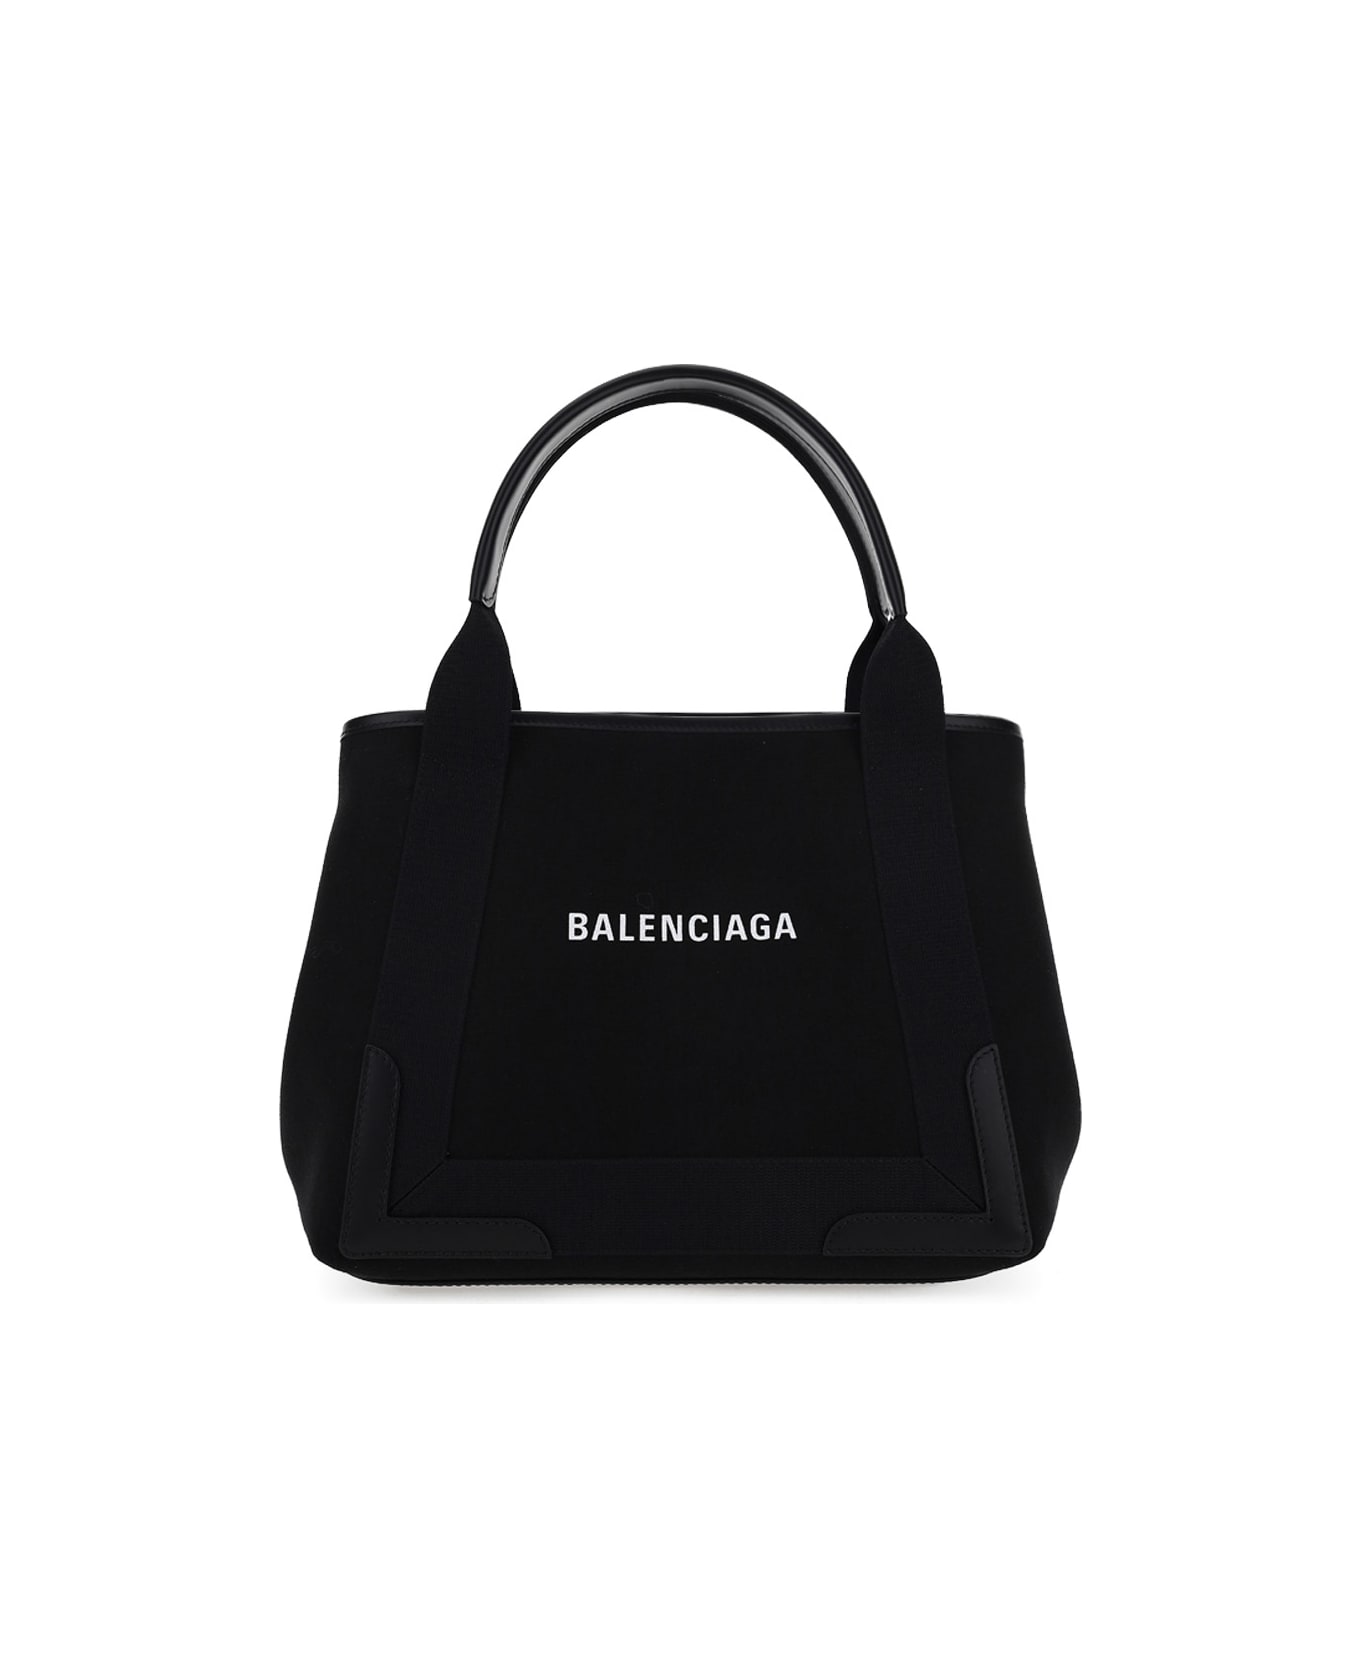 Balenciaga Tote Bag - Black